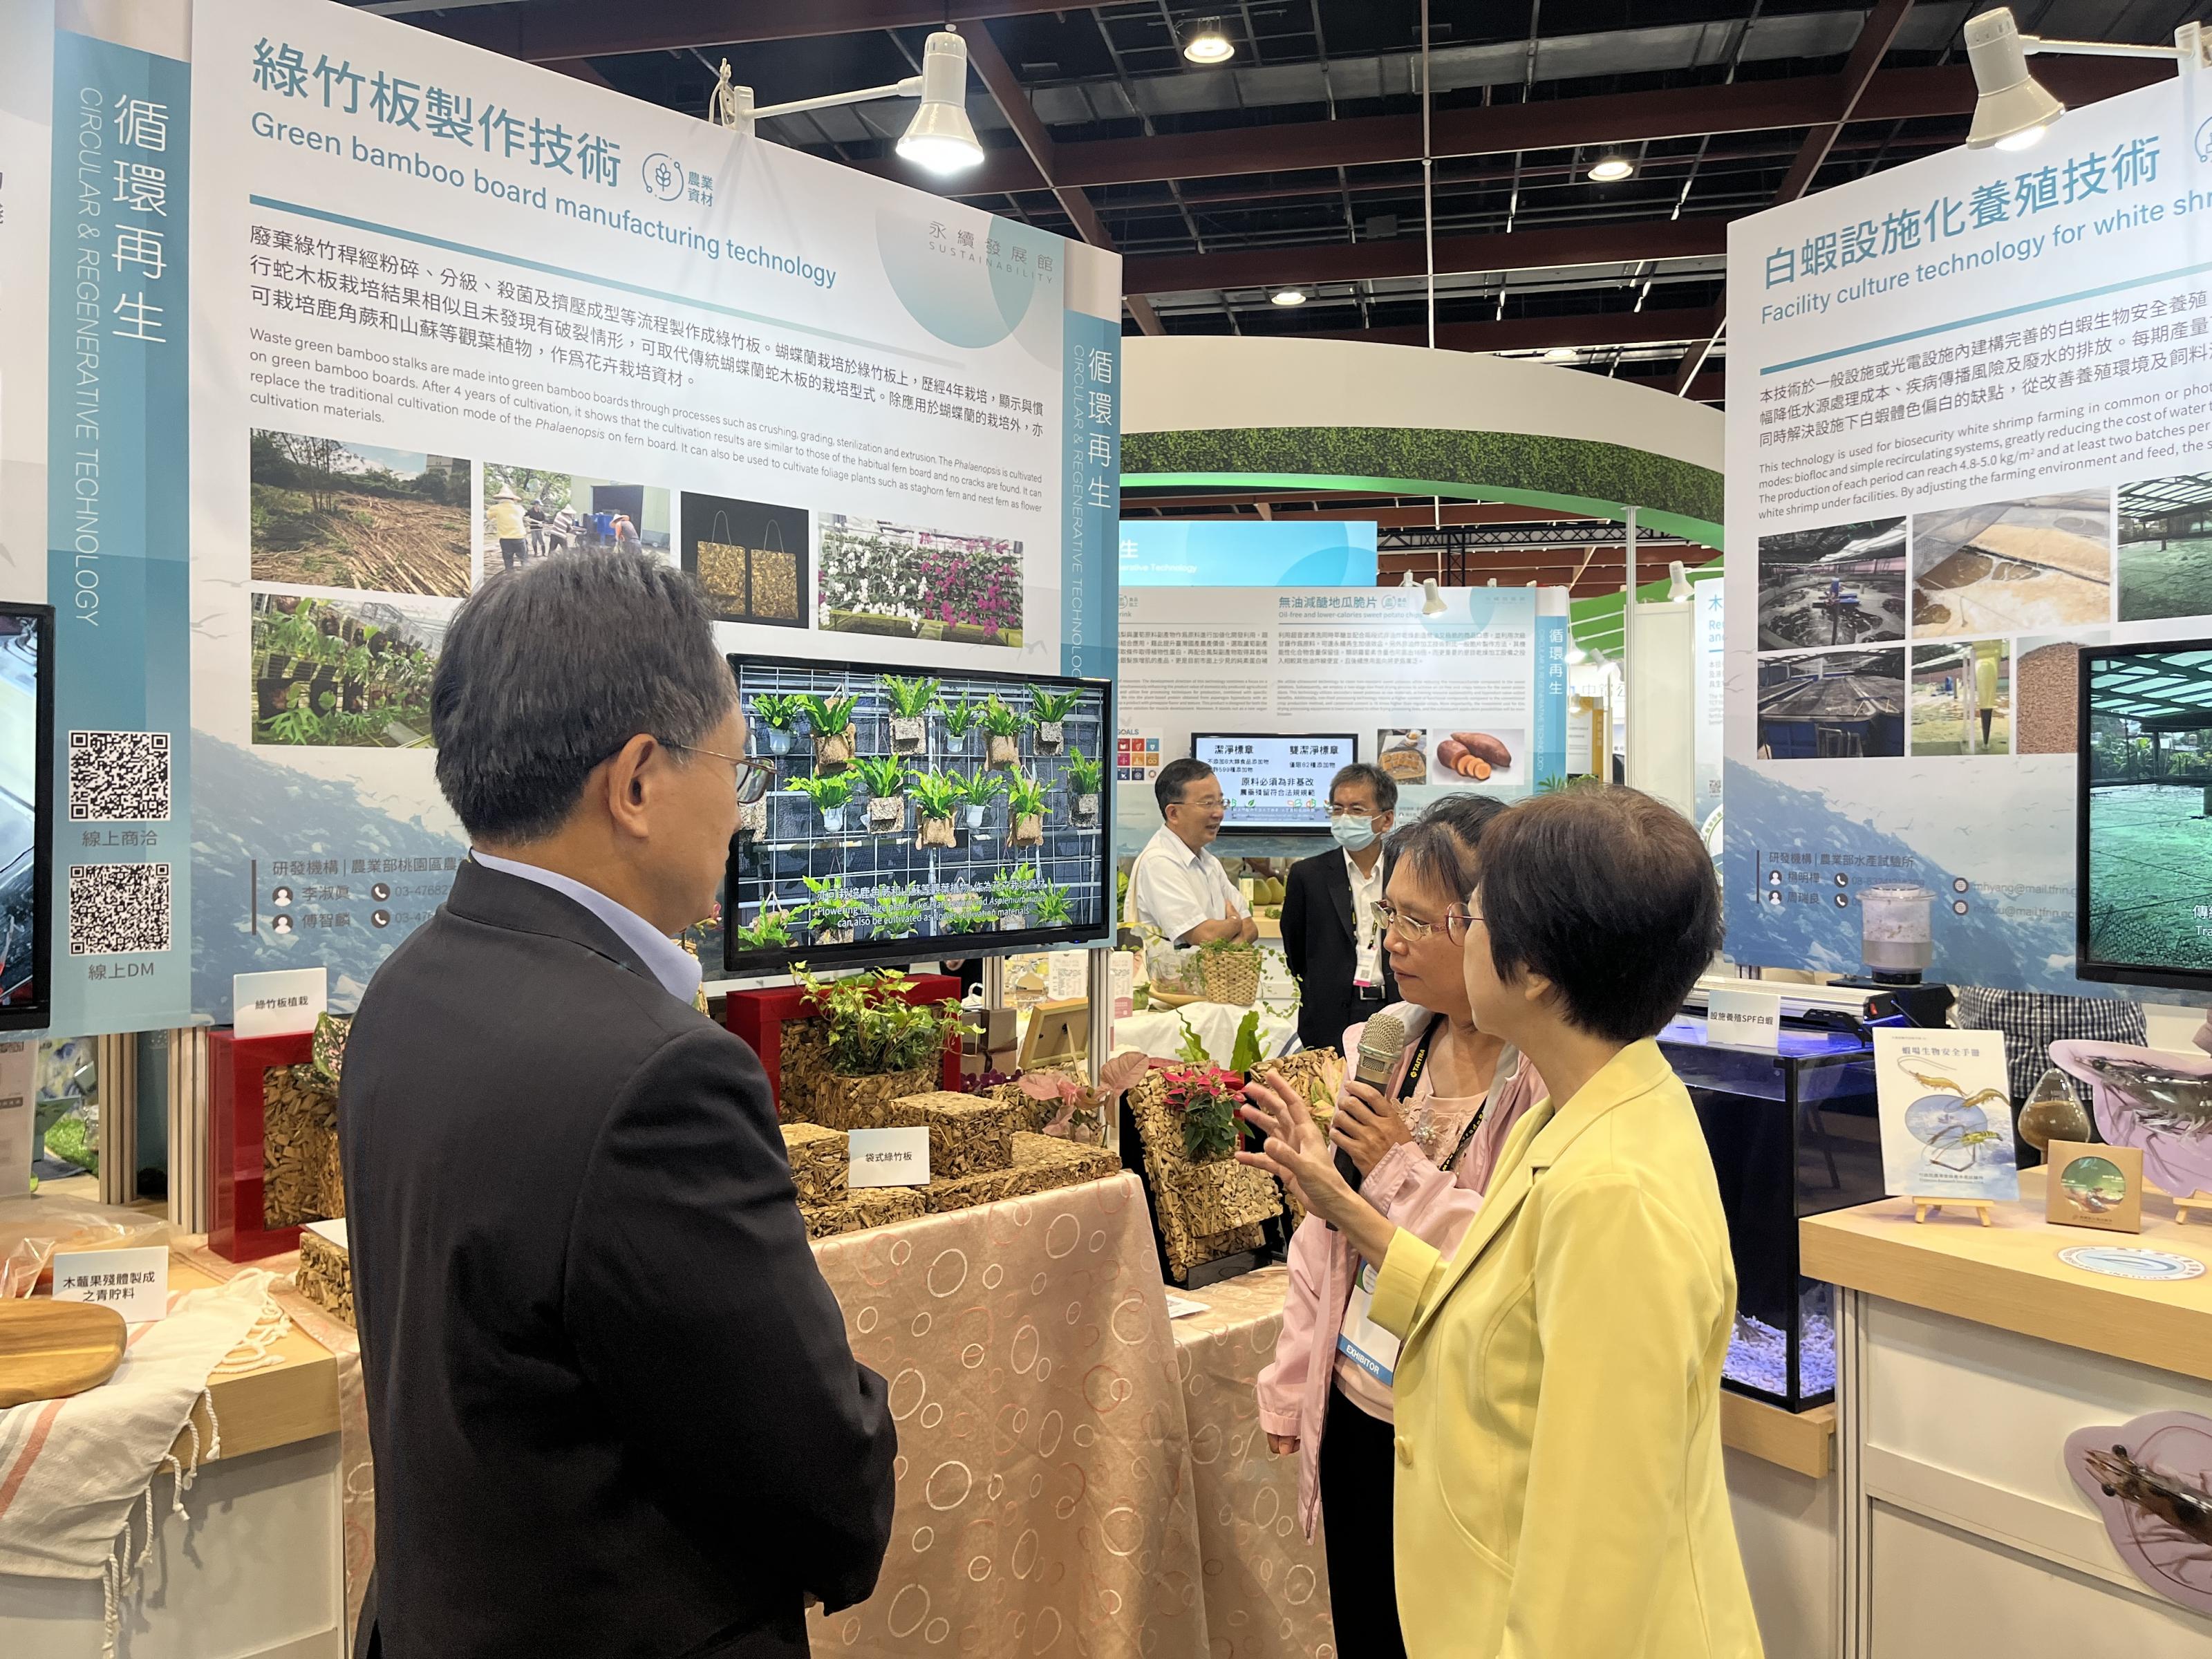 李淑真副研究員 (右2) 向農業部農業科技司李紅曦司長(右1) 介紹綠竹板製作技術